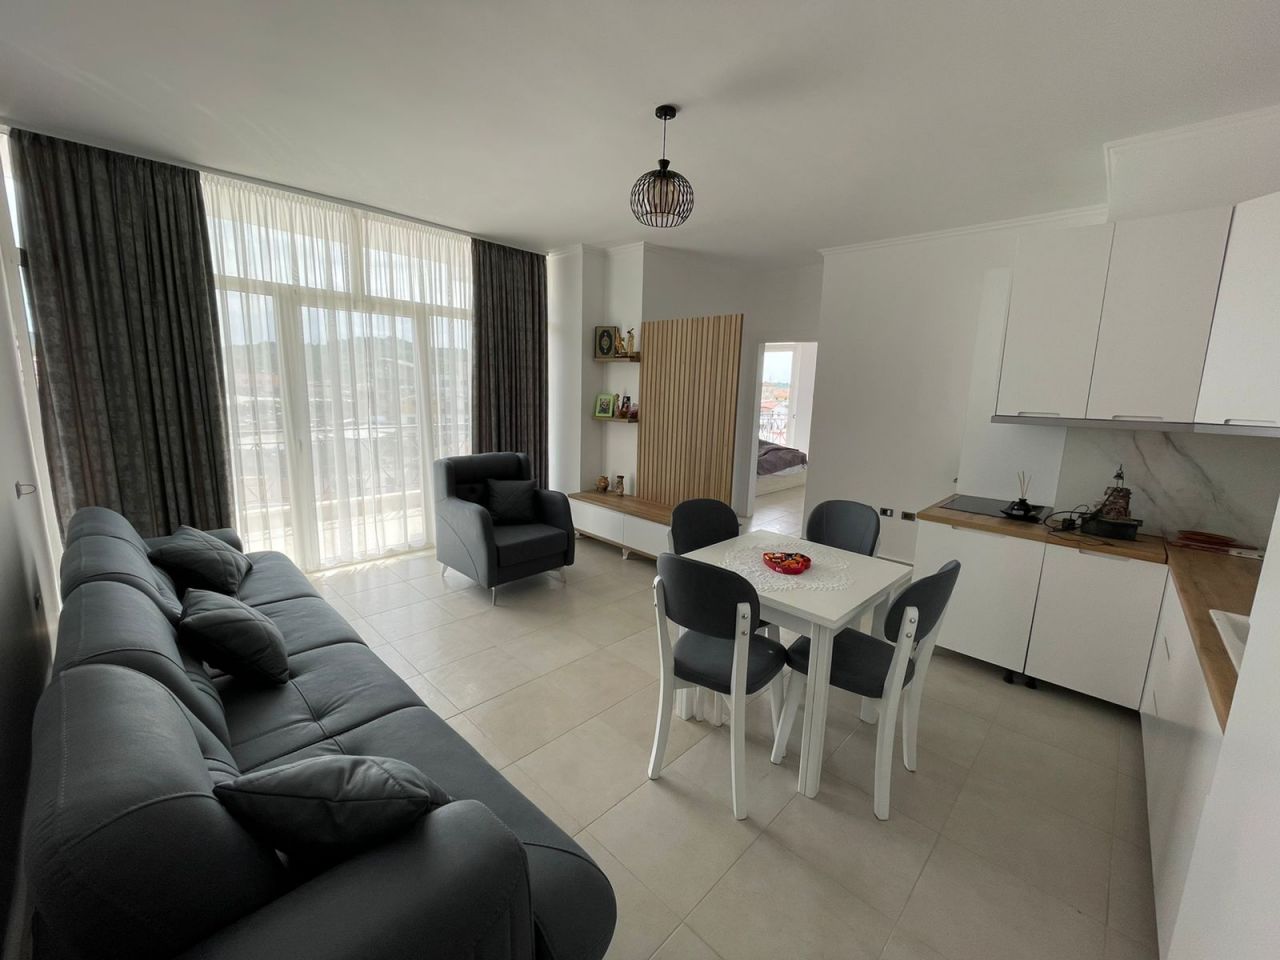 Apartment in Durres, Albania, 70 sq.m - picture 1